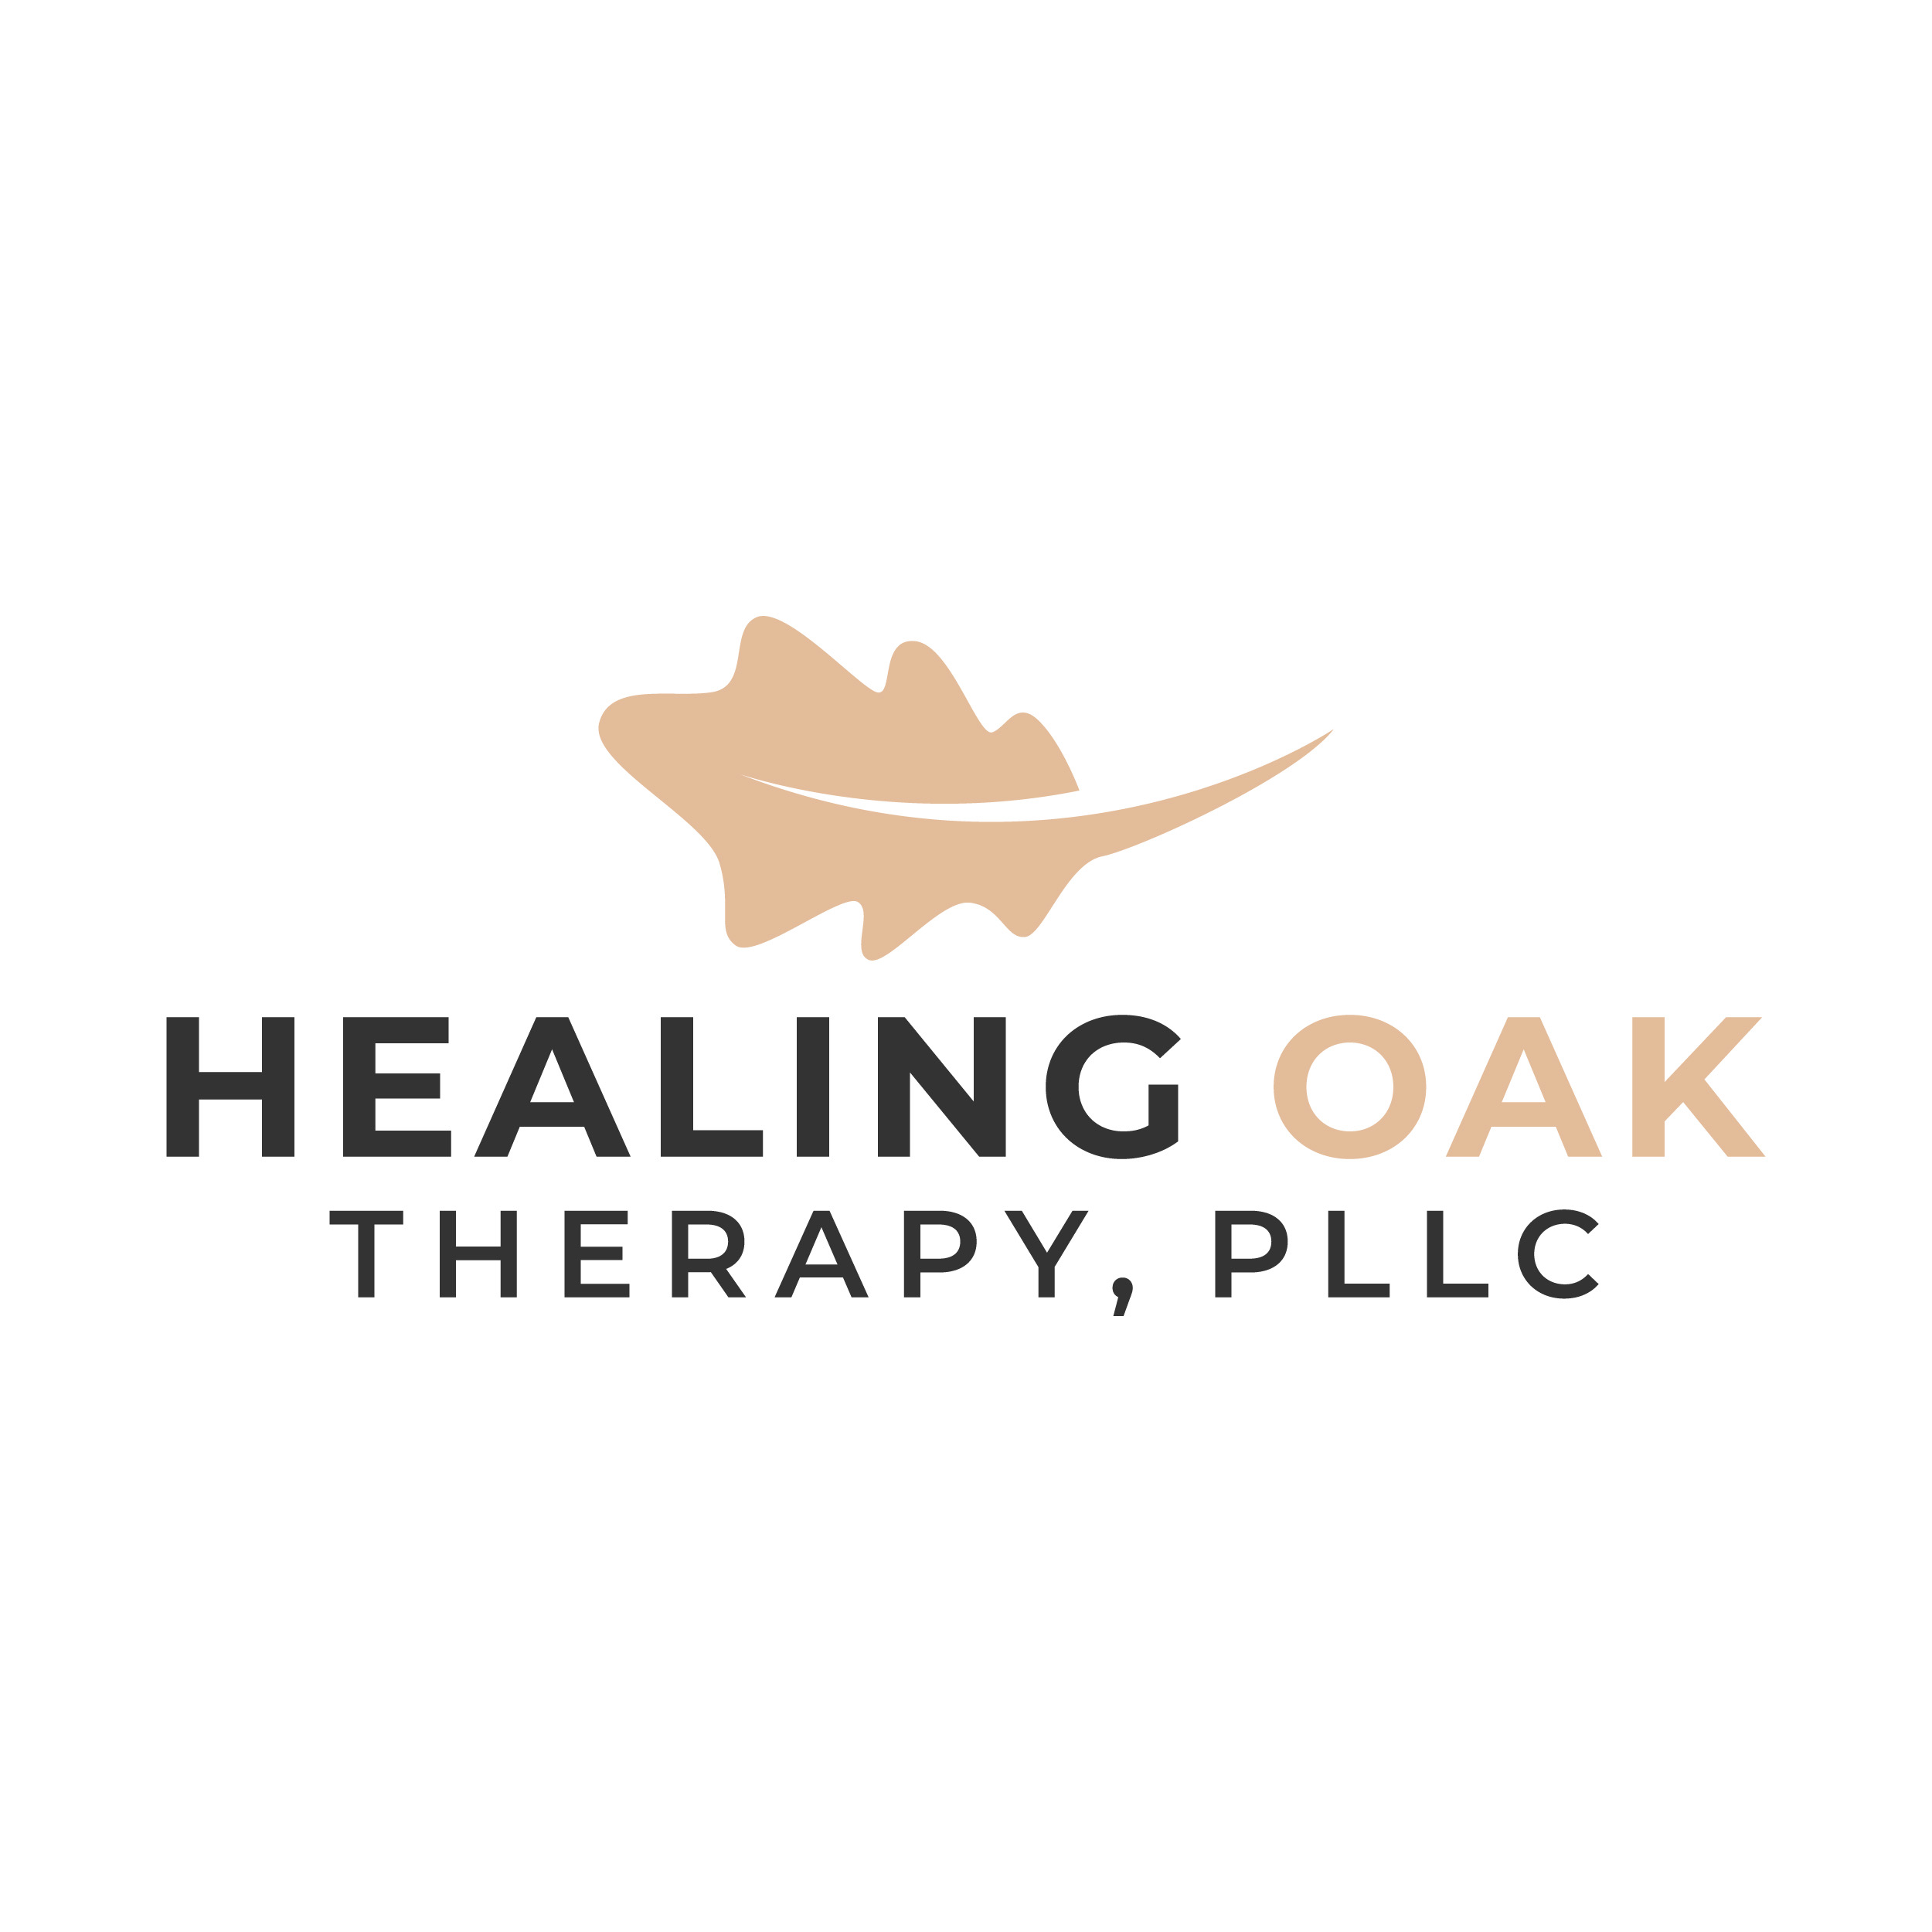 Healing Oak Therapy, PLLC